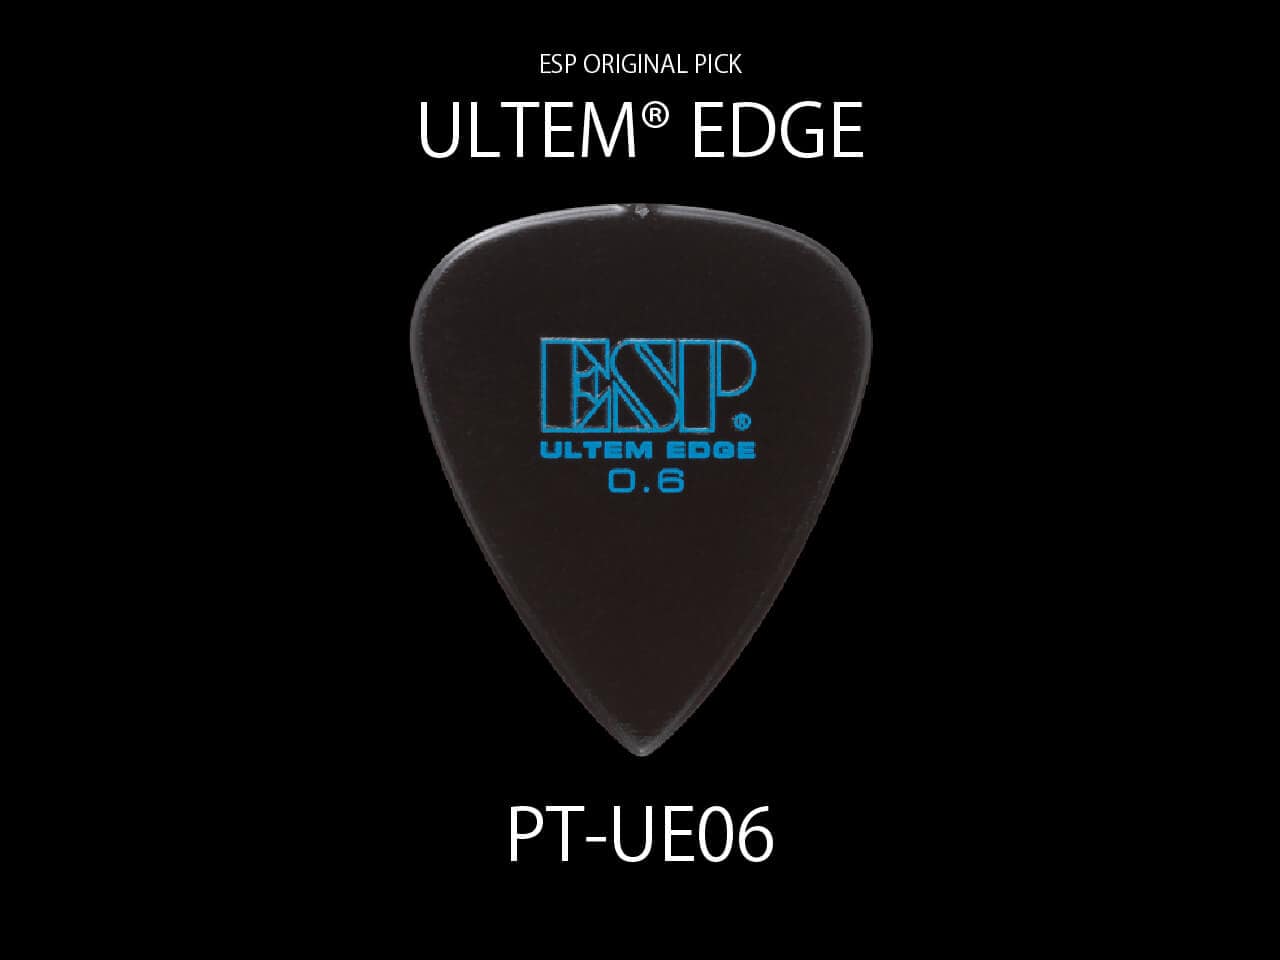 ESP(イーエスピー) Original Pick Series PT-UE06 / ULTEM® EDGE